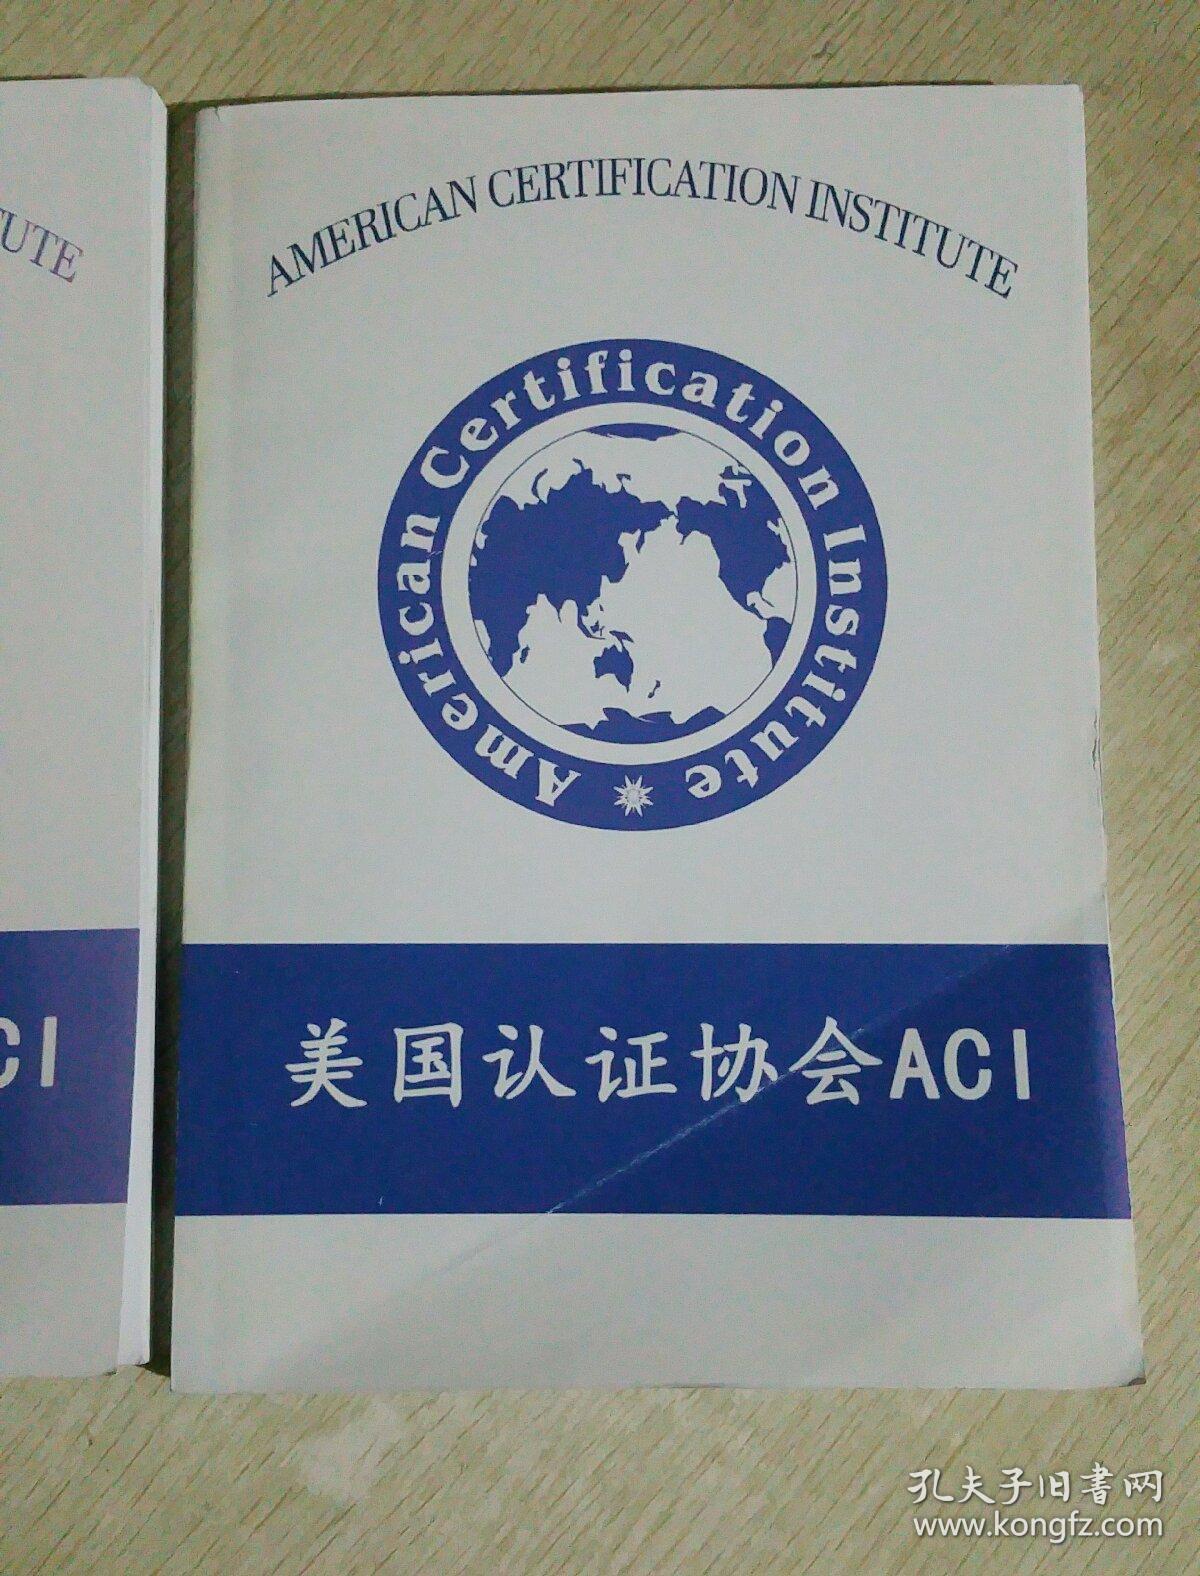 美国认证协会ACI :心理咨询师学习资料,CIPC注